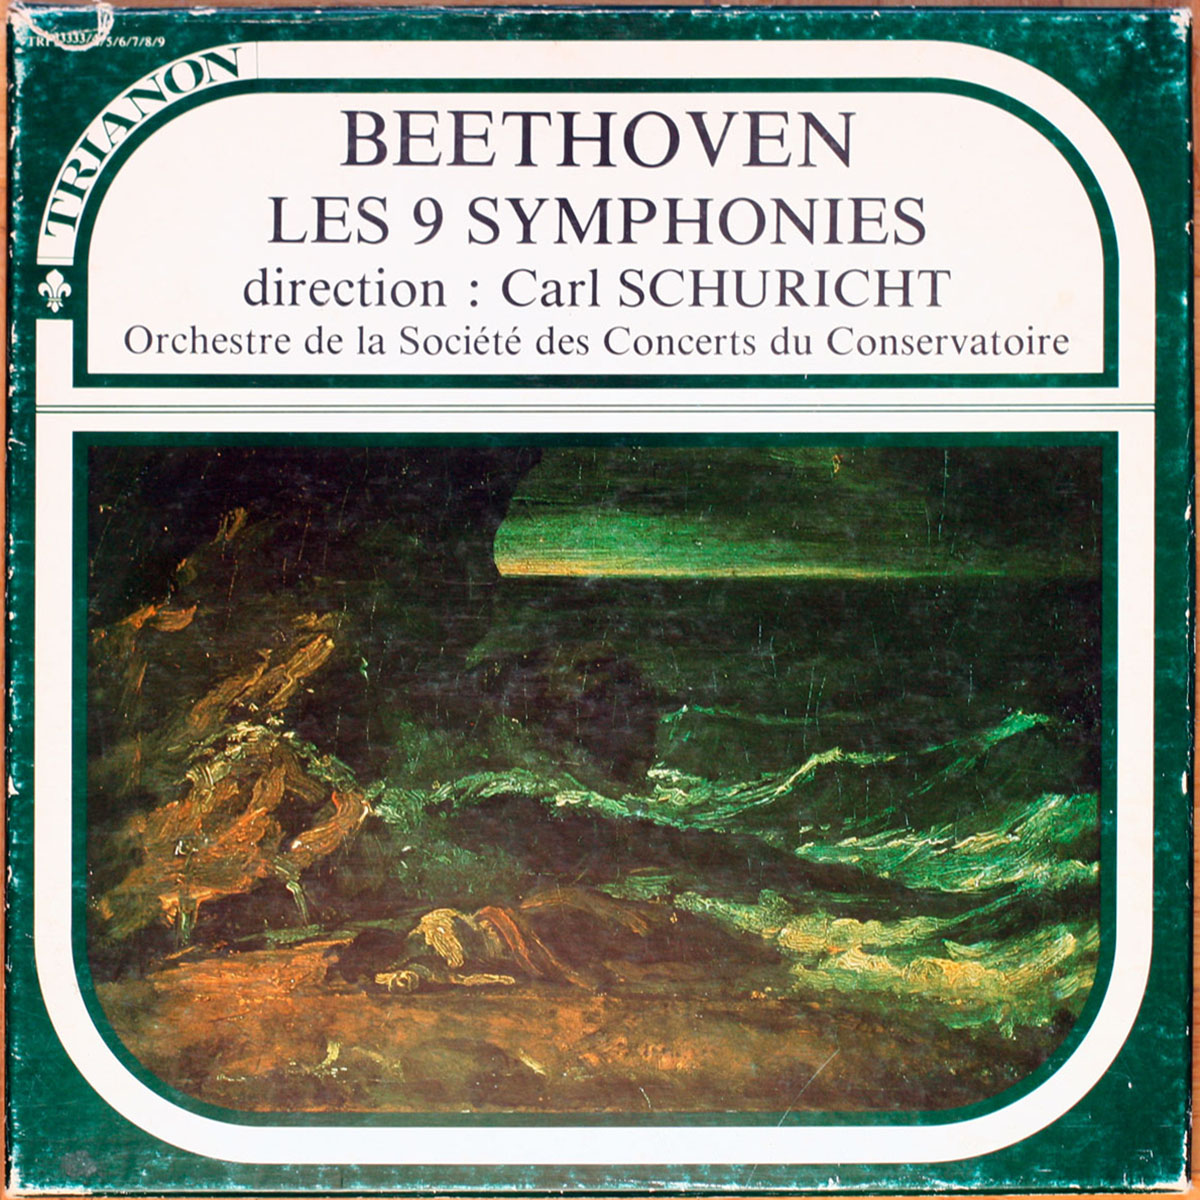 Beethoven • Intégrale des 9 symphonies • The complete symphonies • Trianon 33333-9 • Frick • Höffgen • Lipp • Dickie • Orchestre de la Société des Concerts du Conservatoire • Carl Schuricht